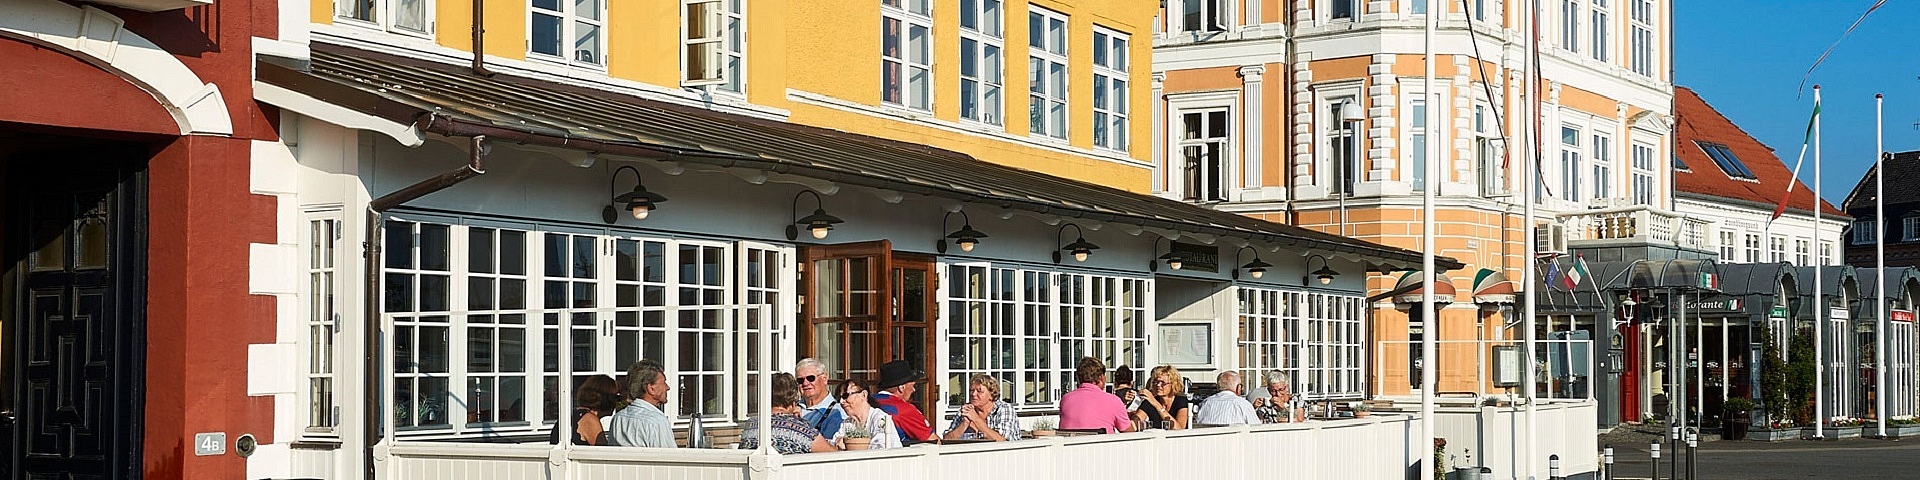 Hotel Ærø Svendborg | Golf på Fyn